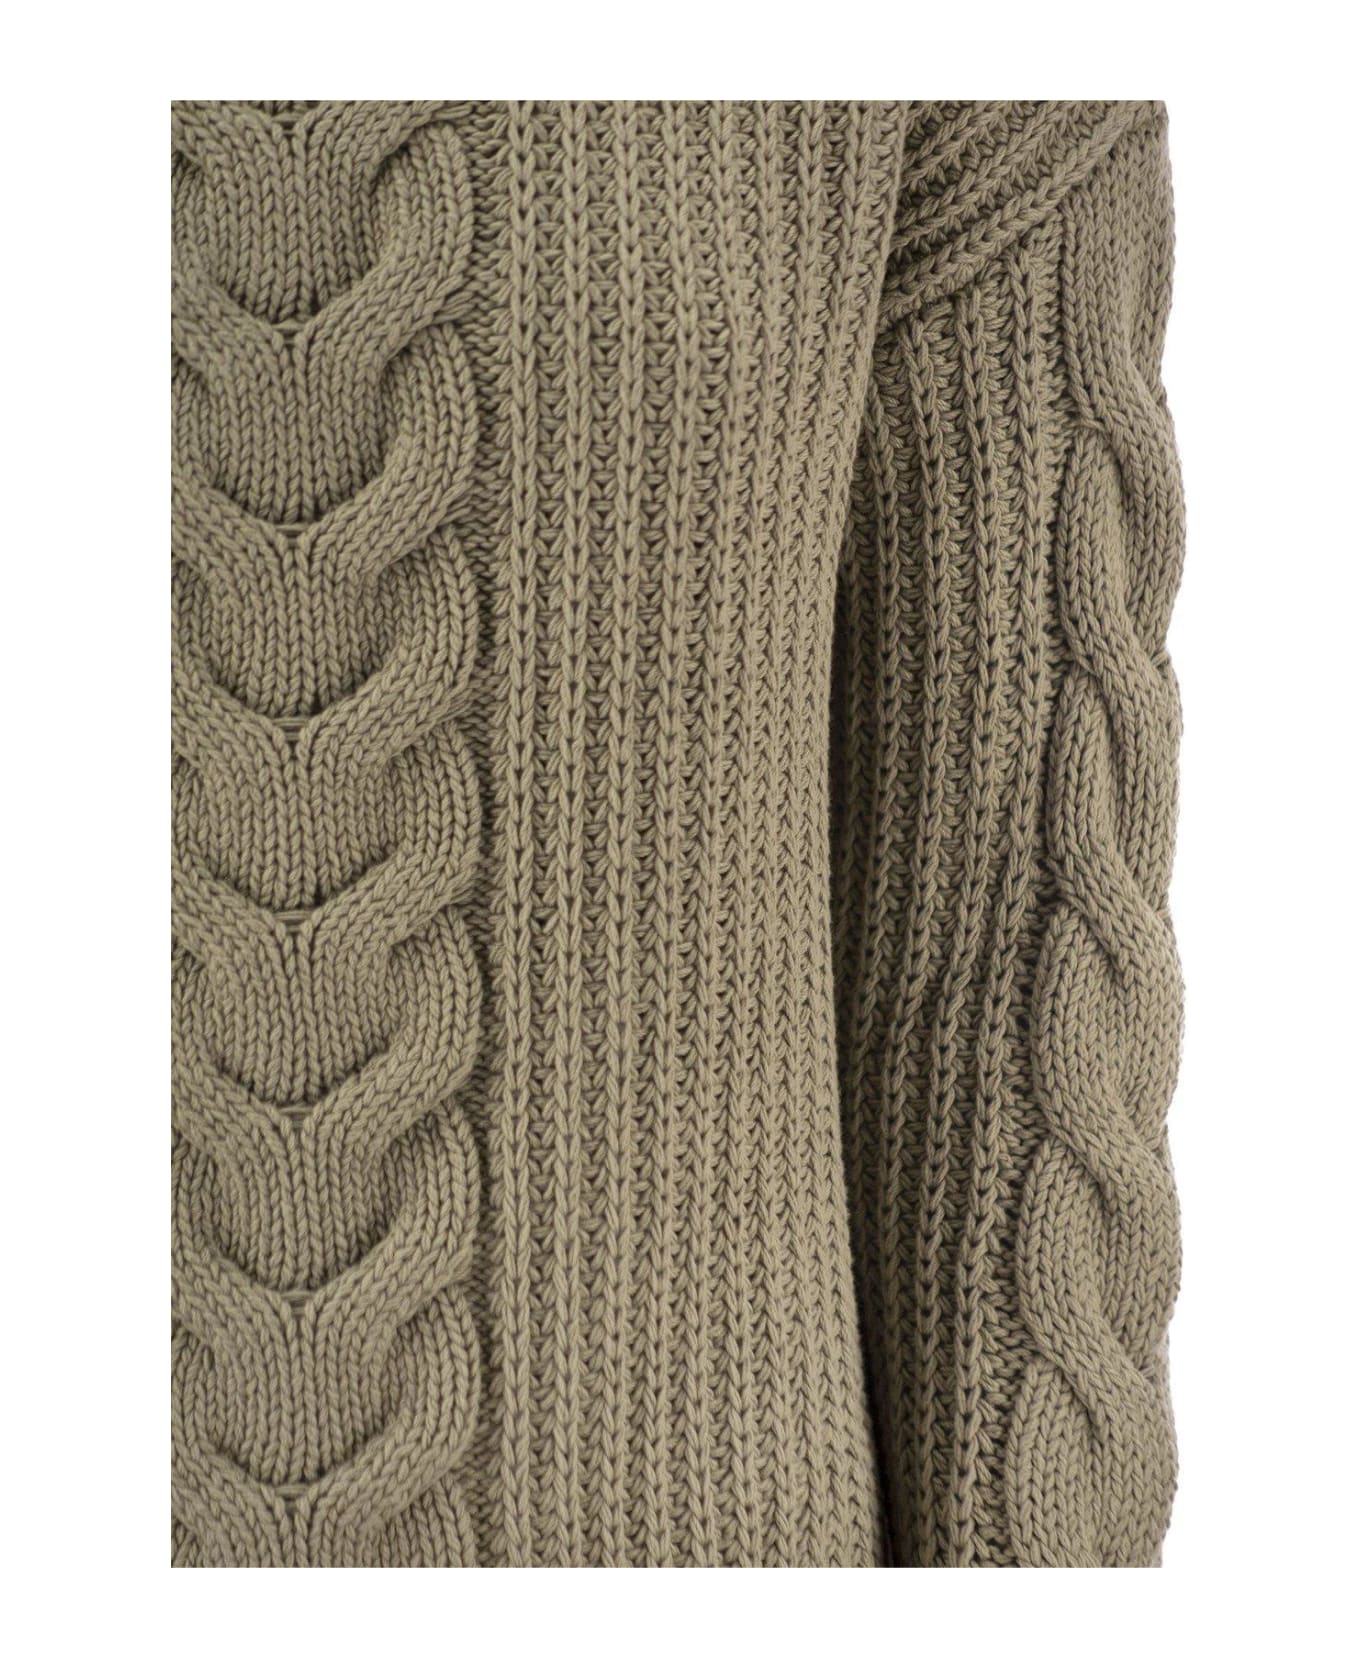 Max Mara Crewneck Knit Sweaters - Kaki